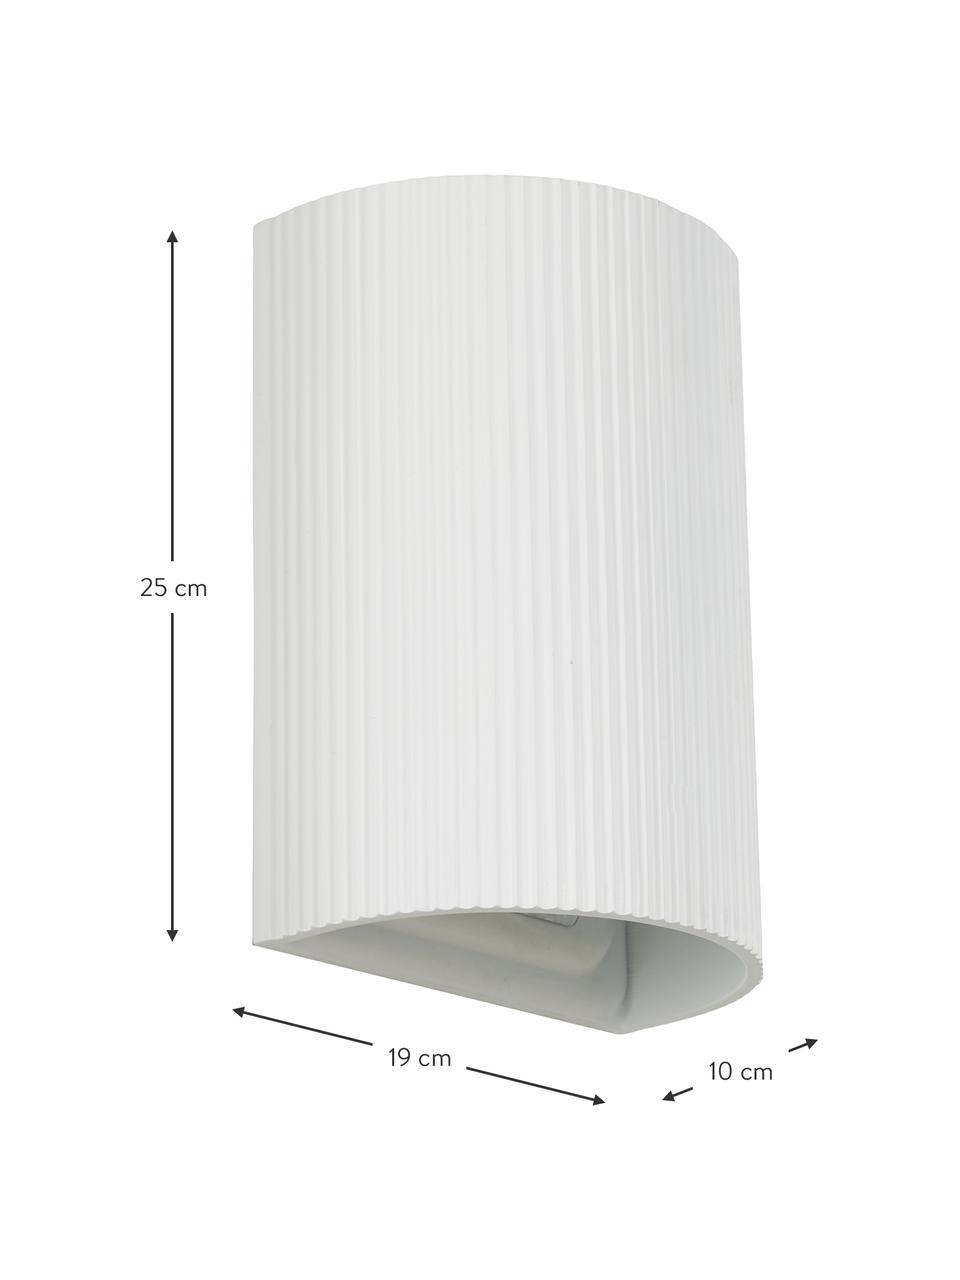 Moderne Wandleuchte Hilko in Weiß, Lampenschirm: Kunstharz, Weiß, 19 x 25 cm